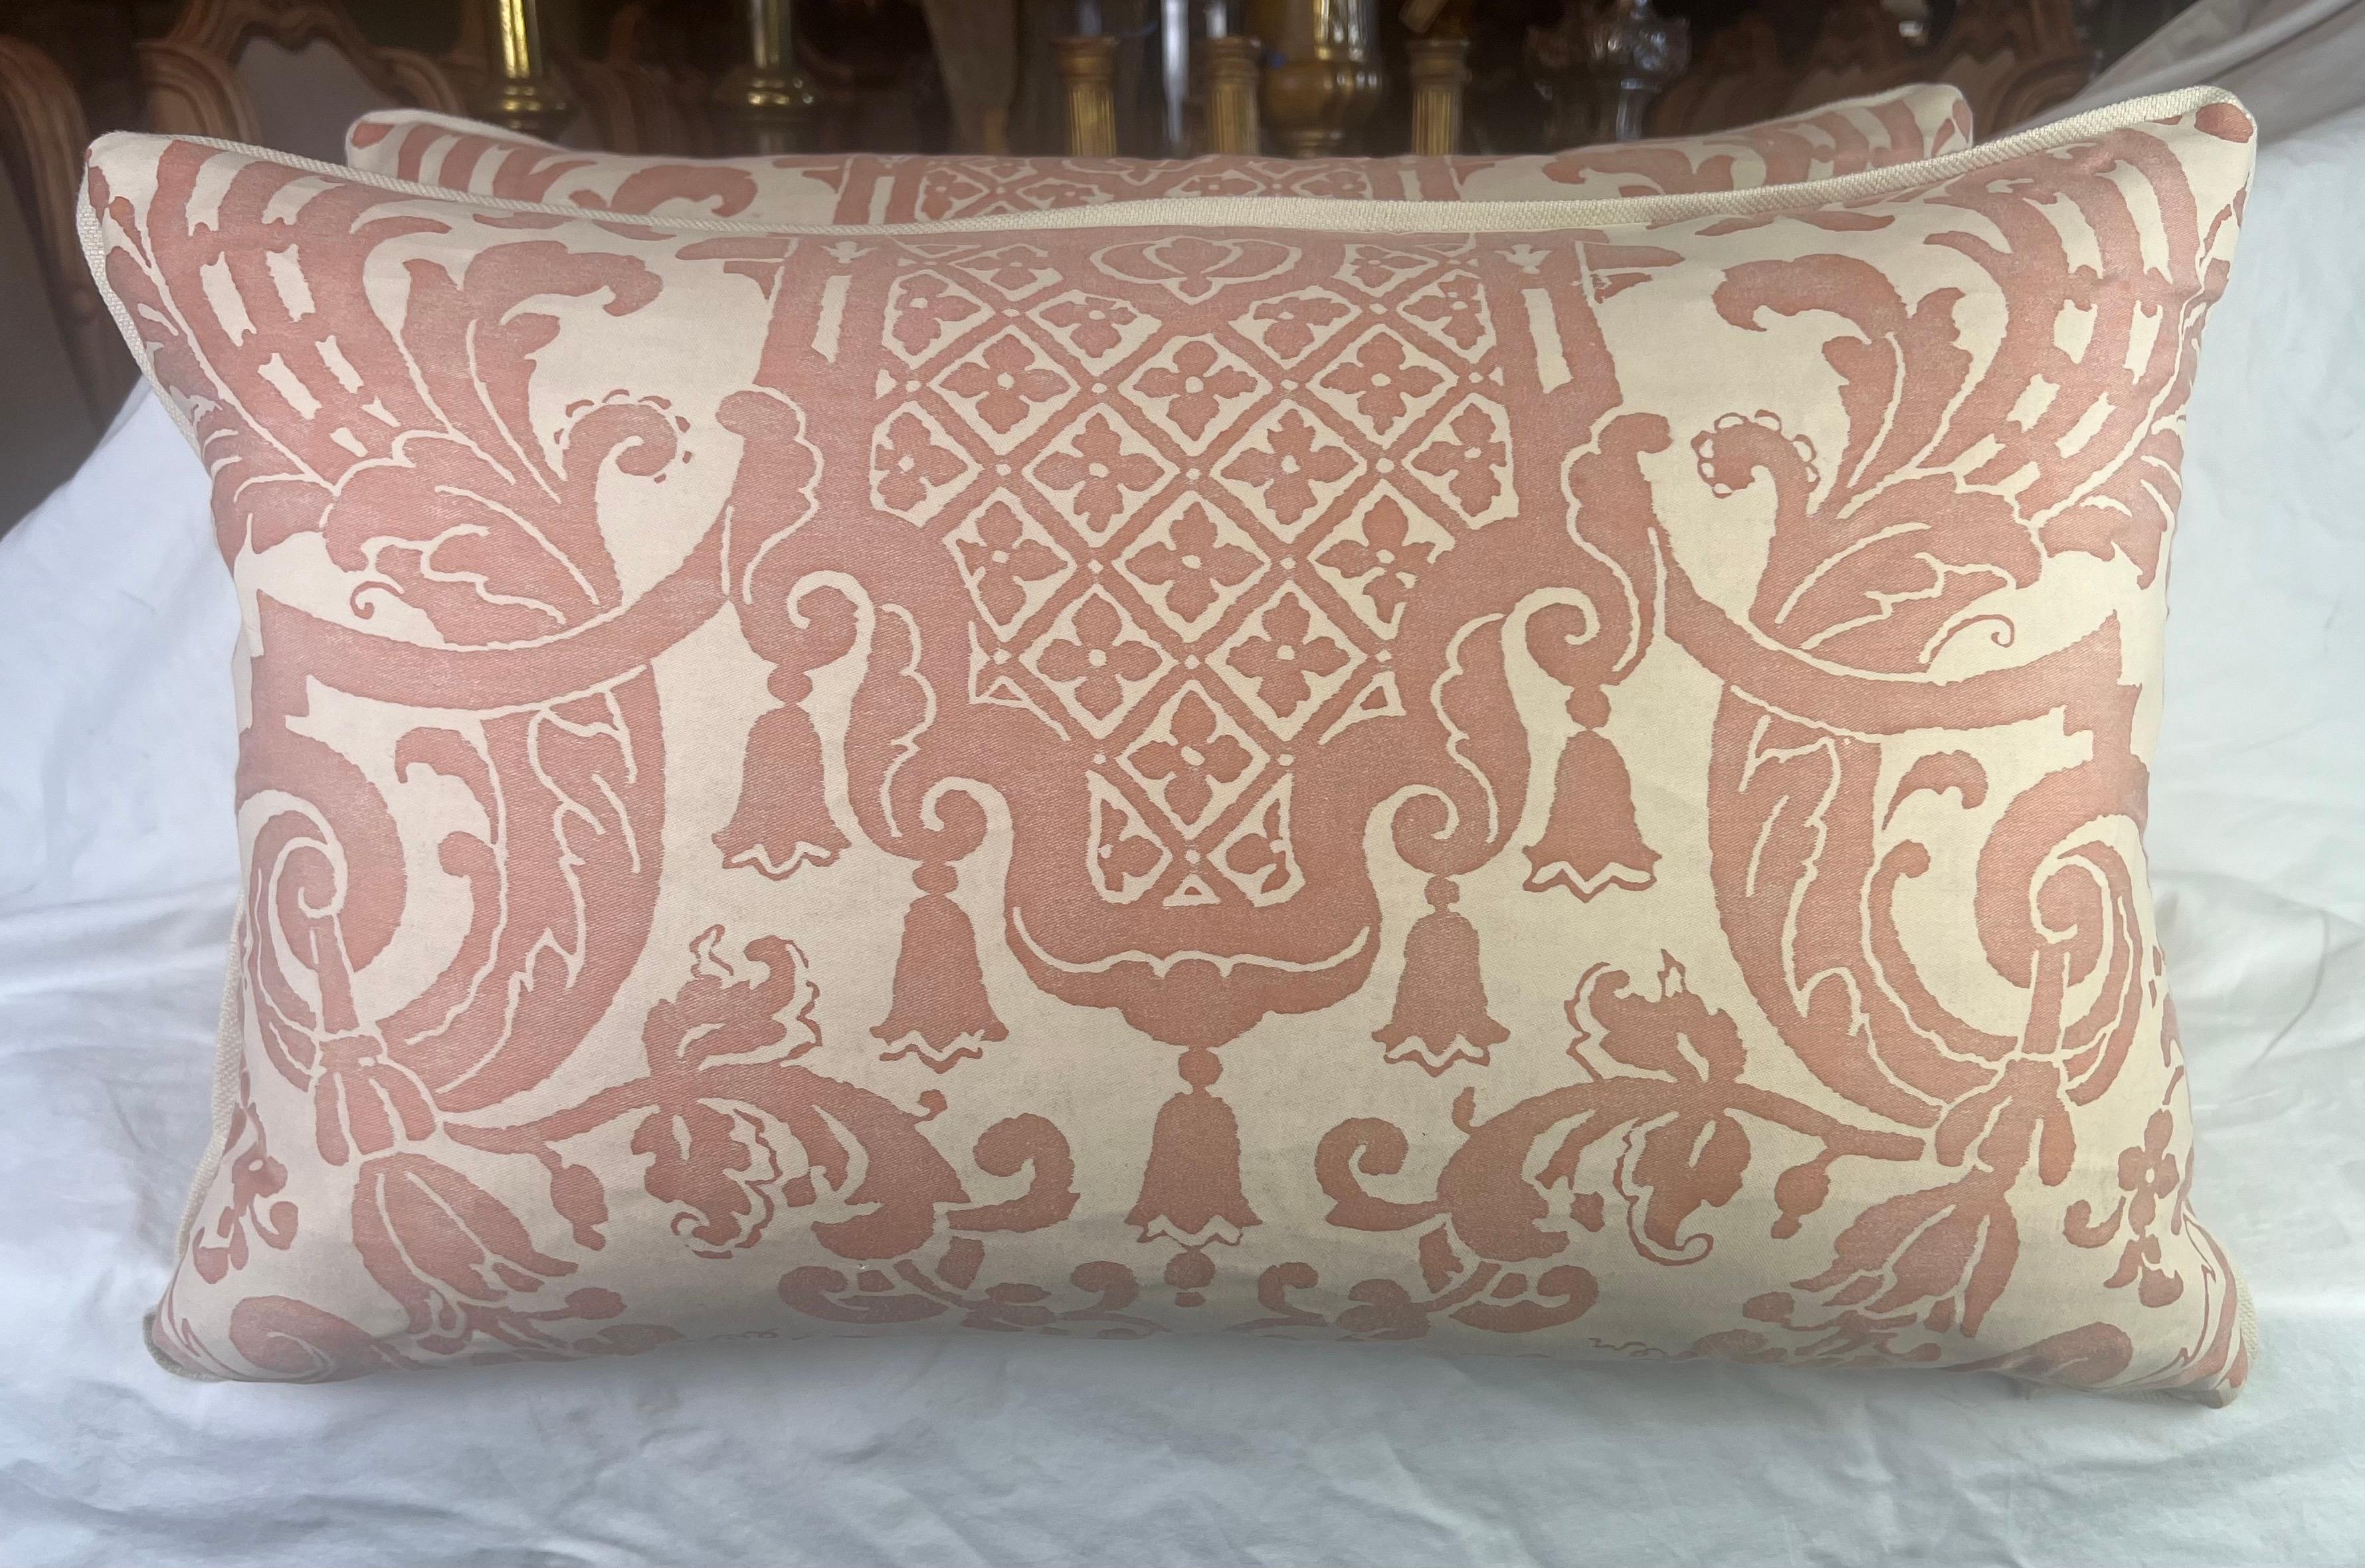 Ein Paar Kissen aus Fortuny-Stoff mit Carnavalet-Muster in Rosa und Creme.  Das vom 17. Jahrhundert inspirierte französische Design - mit prächtigen und komplizierten Gartenurnen, die reichlich mit Blumen geschmückt sind - wird von üppigen